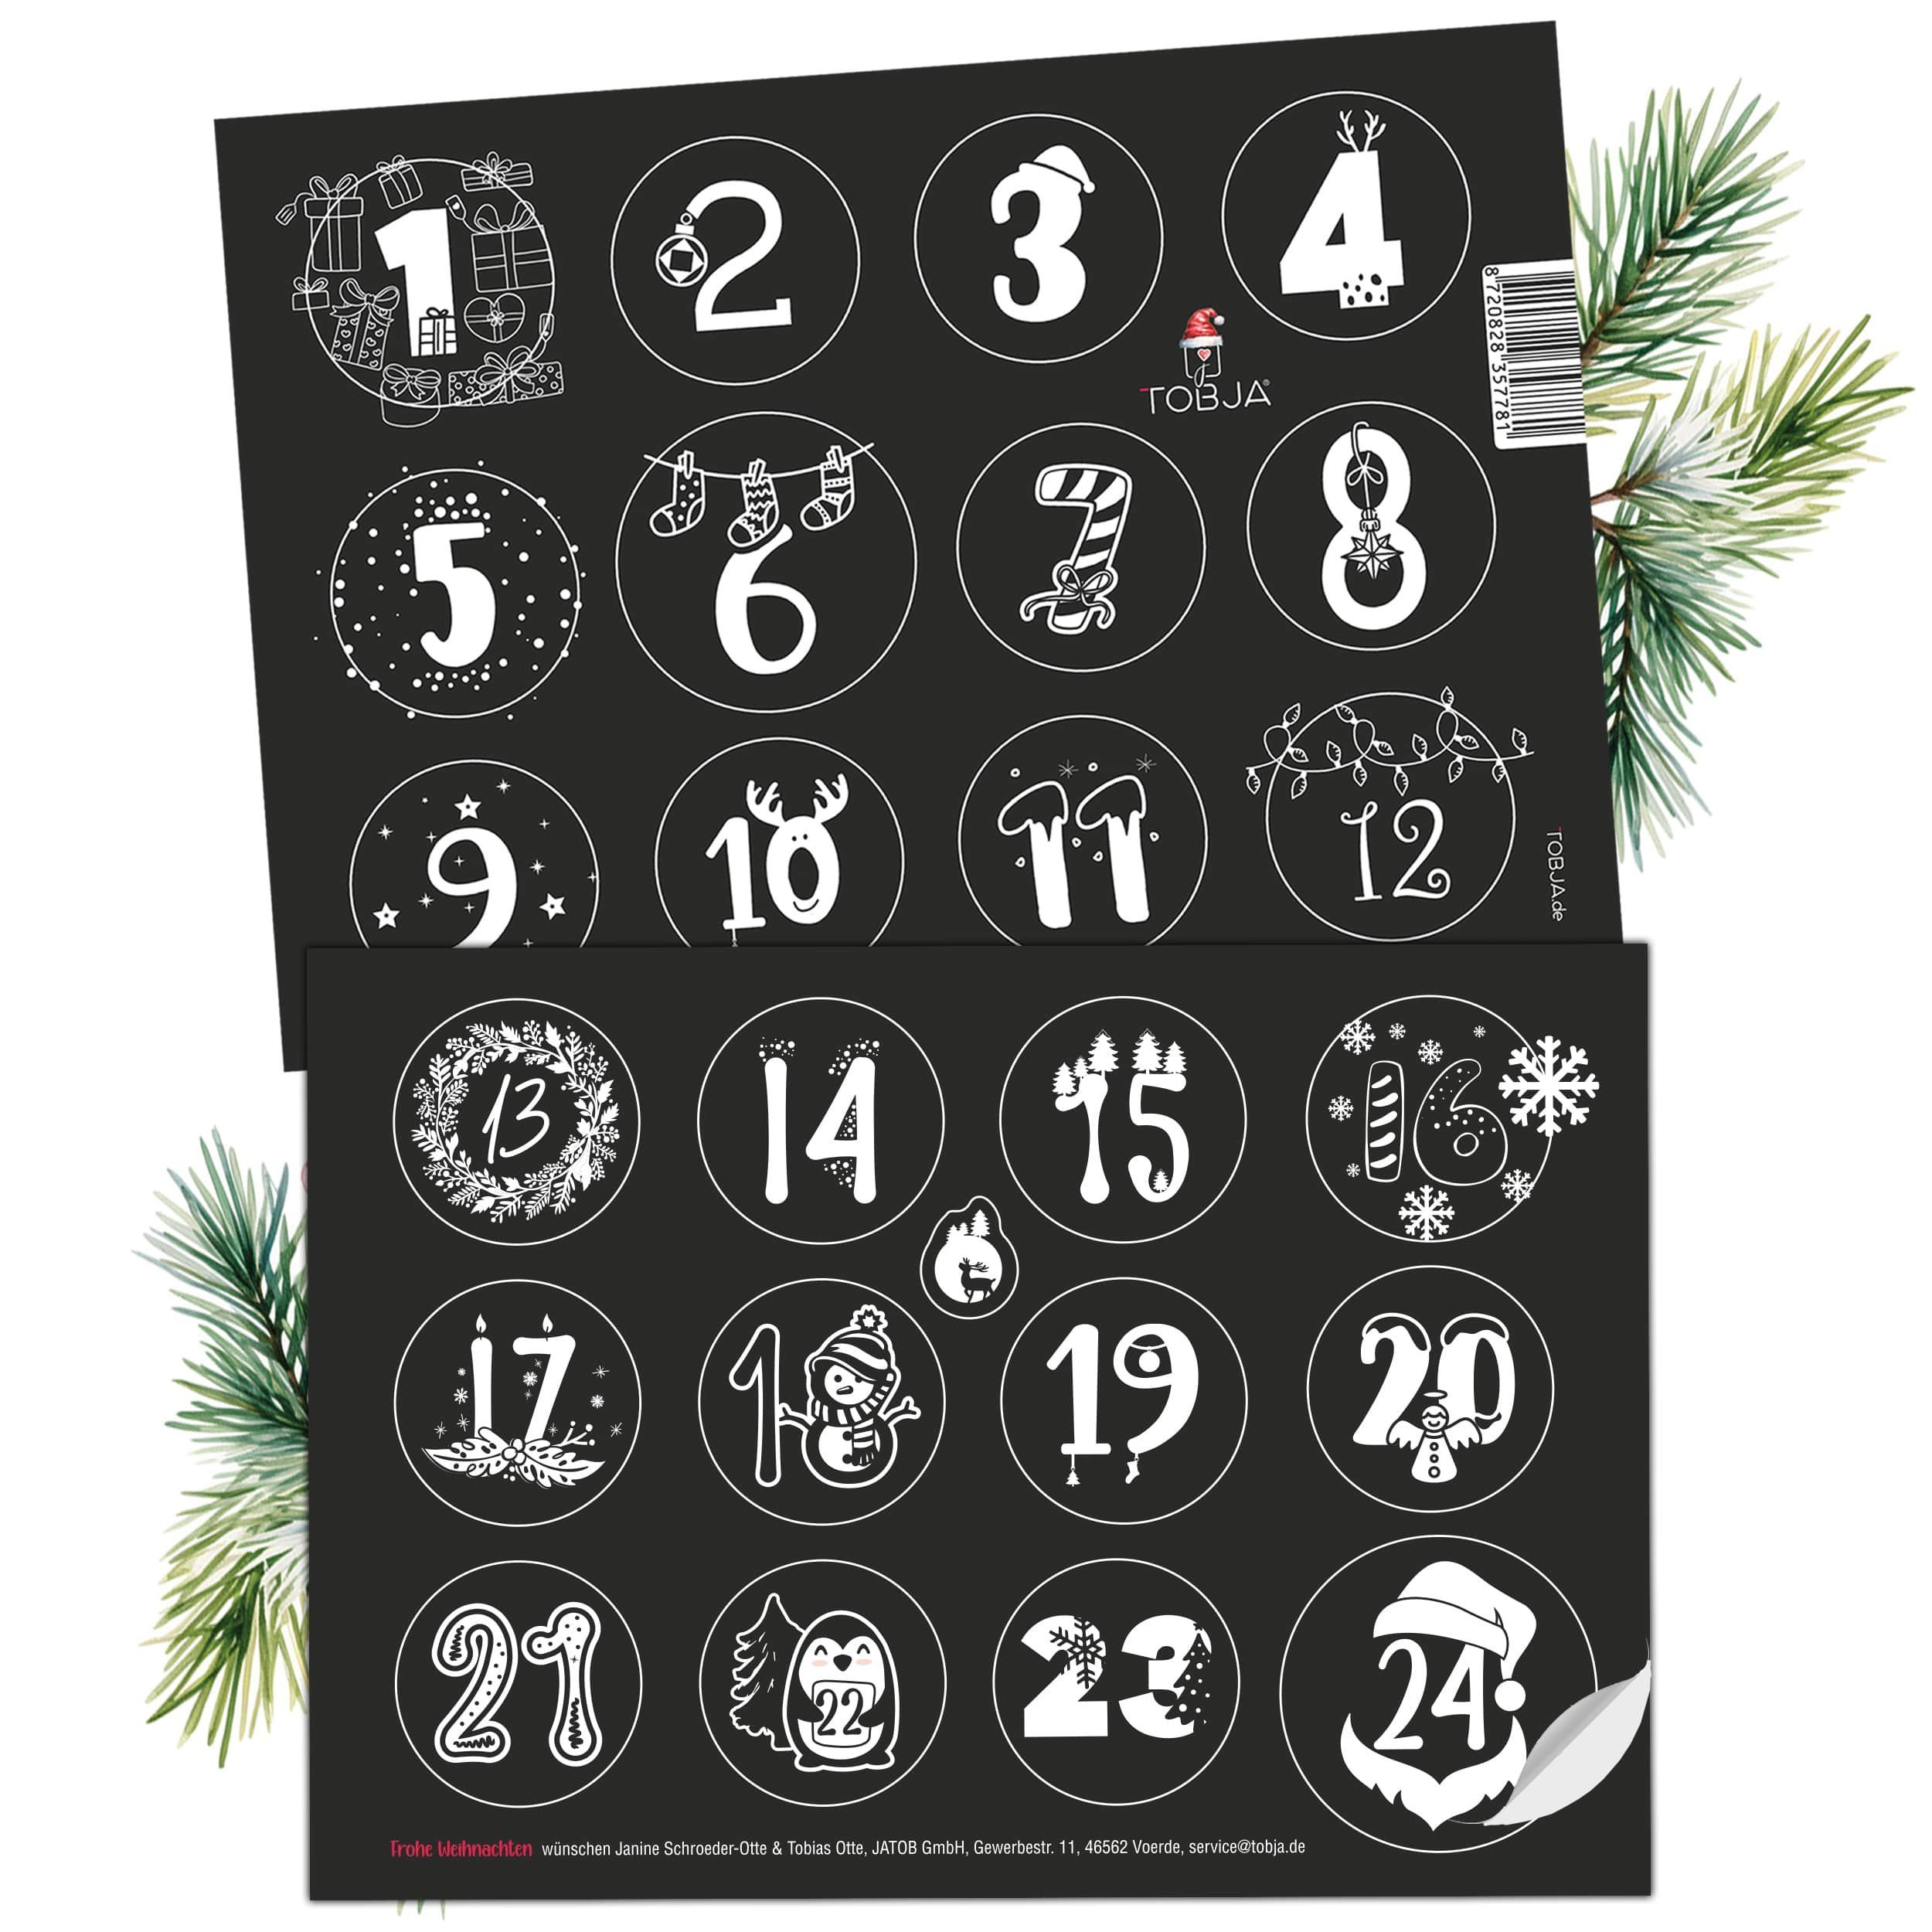 TOBJA Adventskalender Adventsaufkleber Schwarz-Weiß Weihnachtsaufkleber Advent 1-24, Aufkleber Advent Weihnachten. Sticker Nummern Zahlenaufkleber